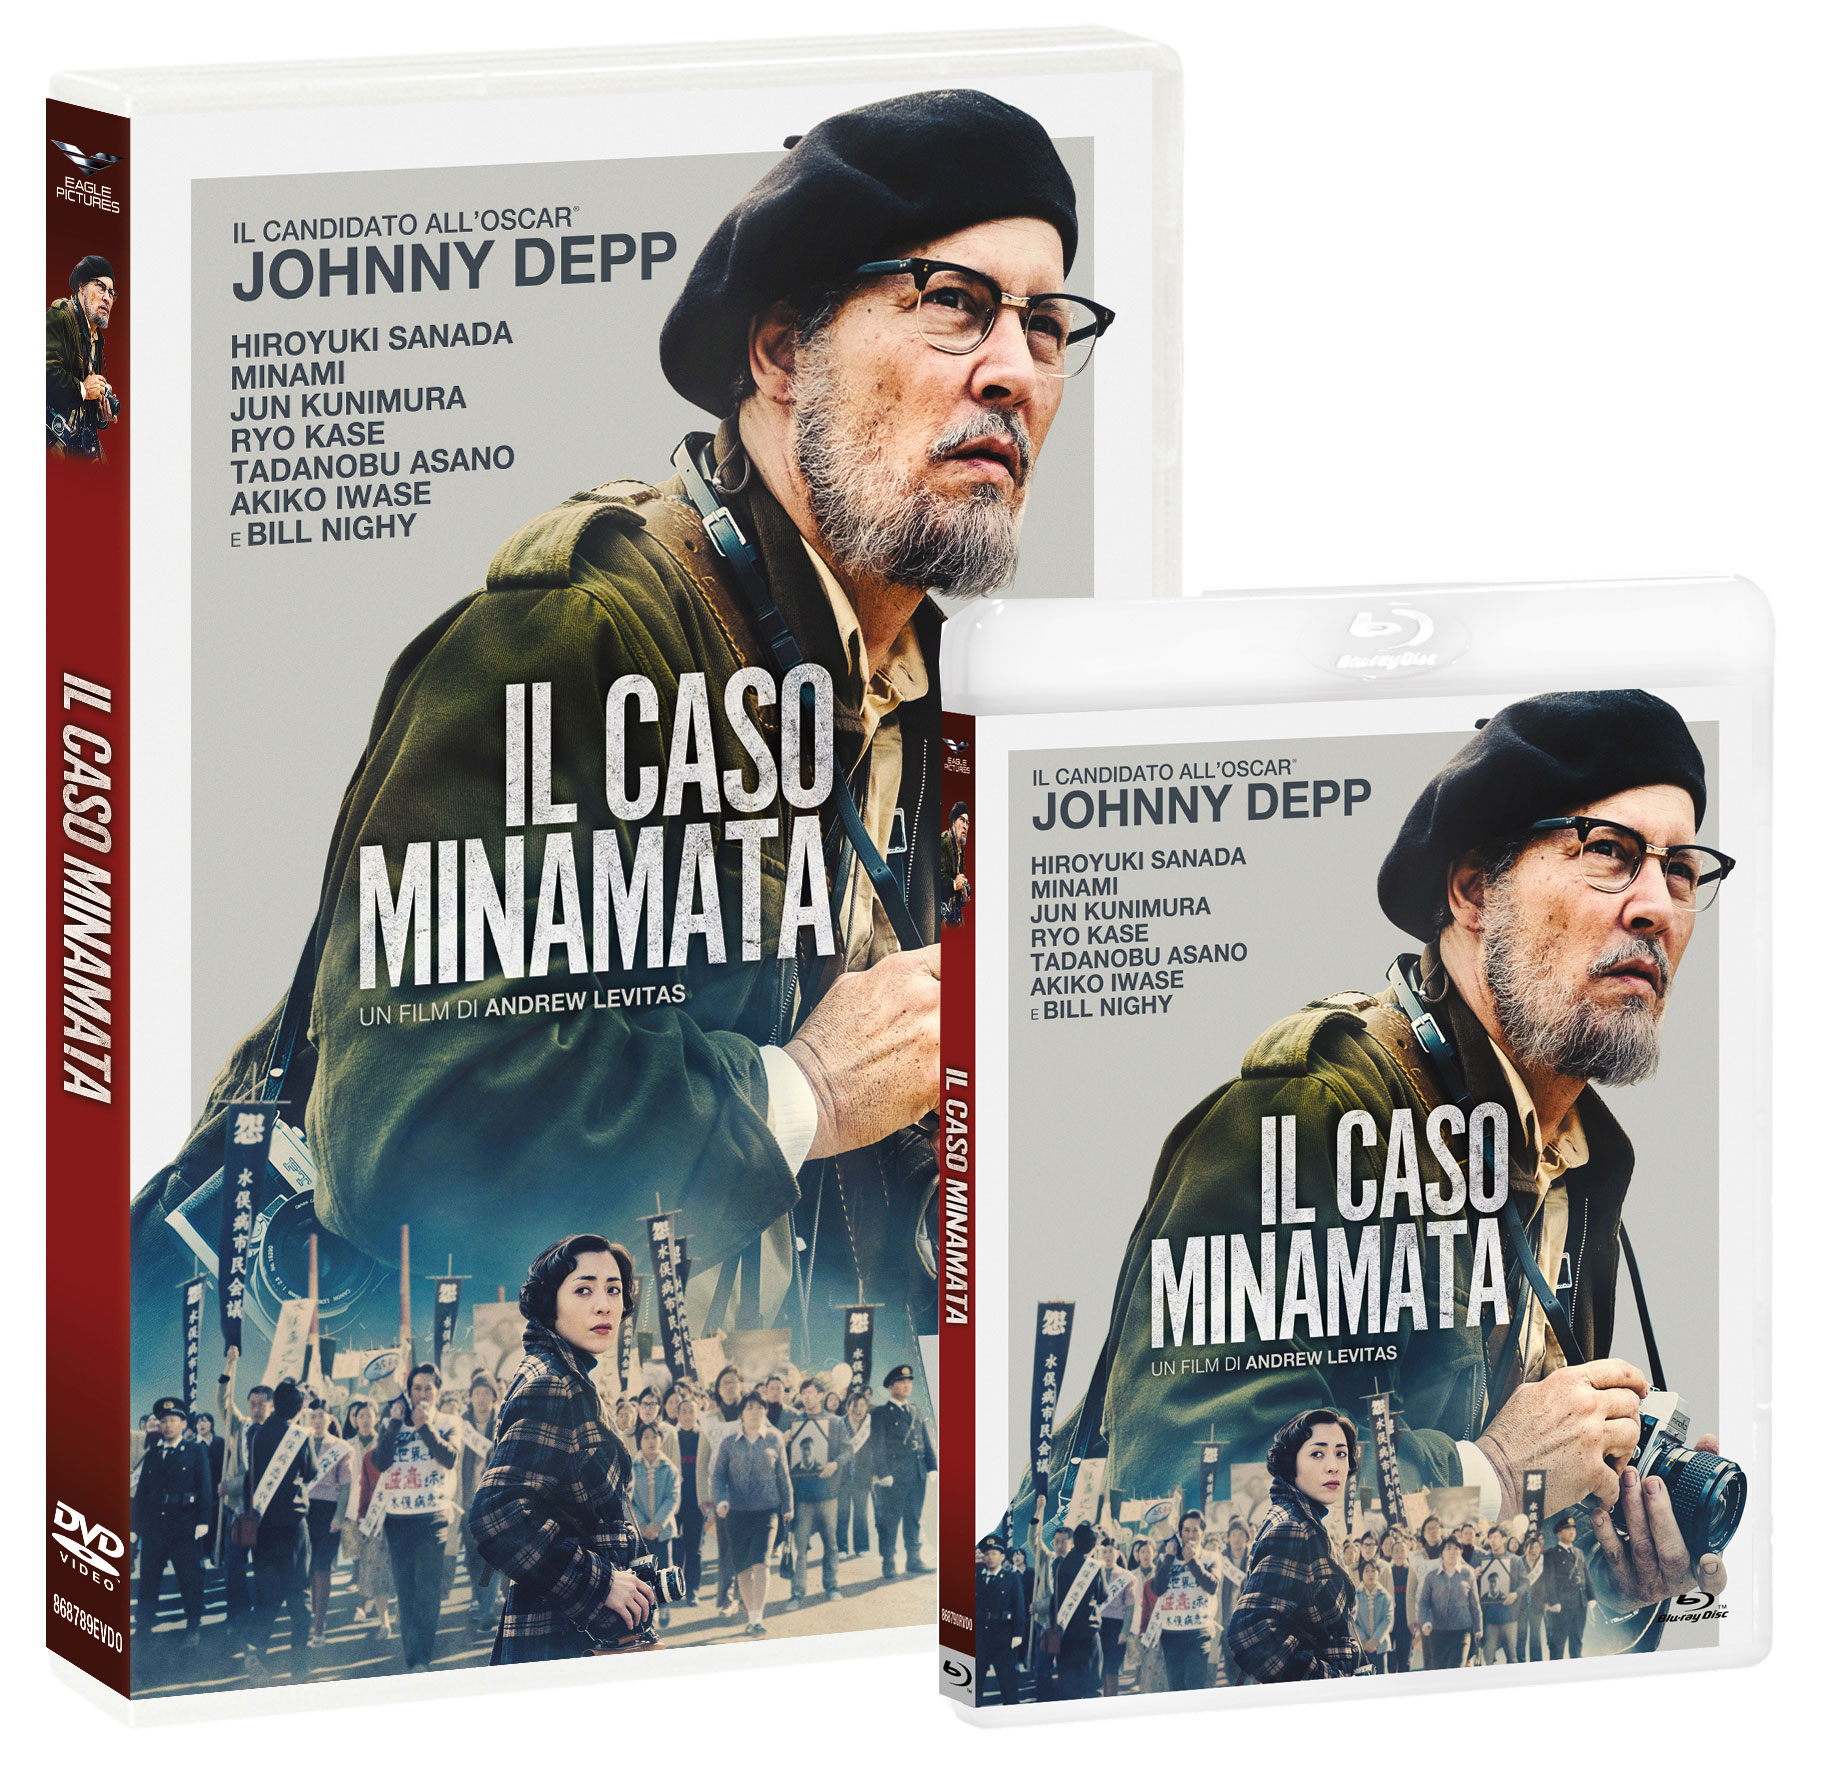 Il caso Minamata in DVD e Bluray